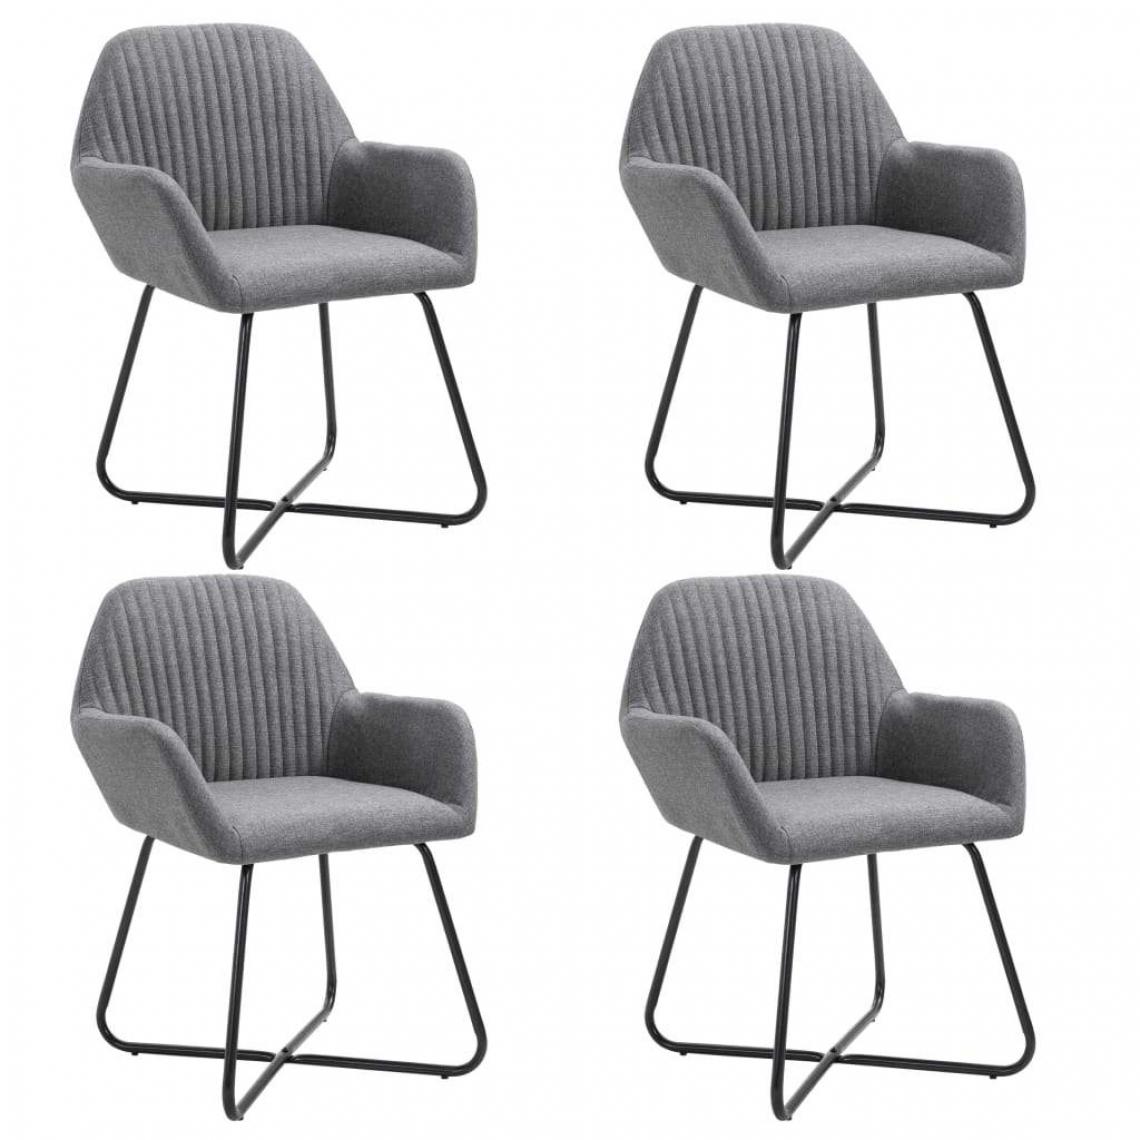 Decoshop26 - Lot de 4 chaises de salle à manger cuisine design moderne tissu gris foncé CDS021557 - Chaises